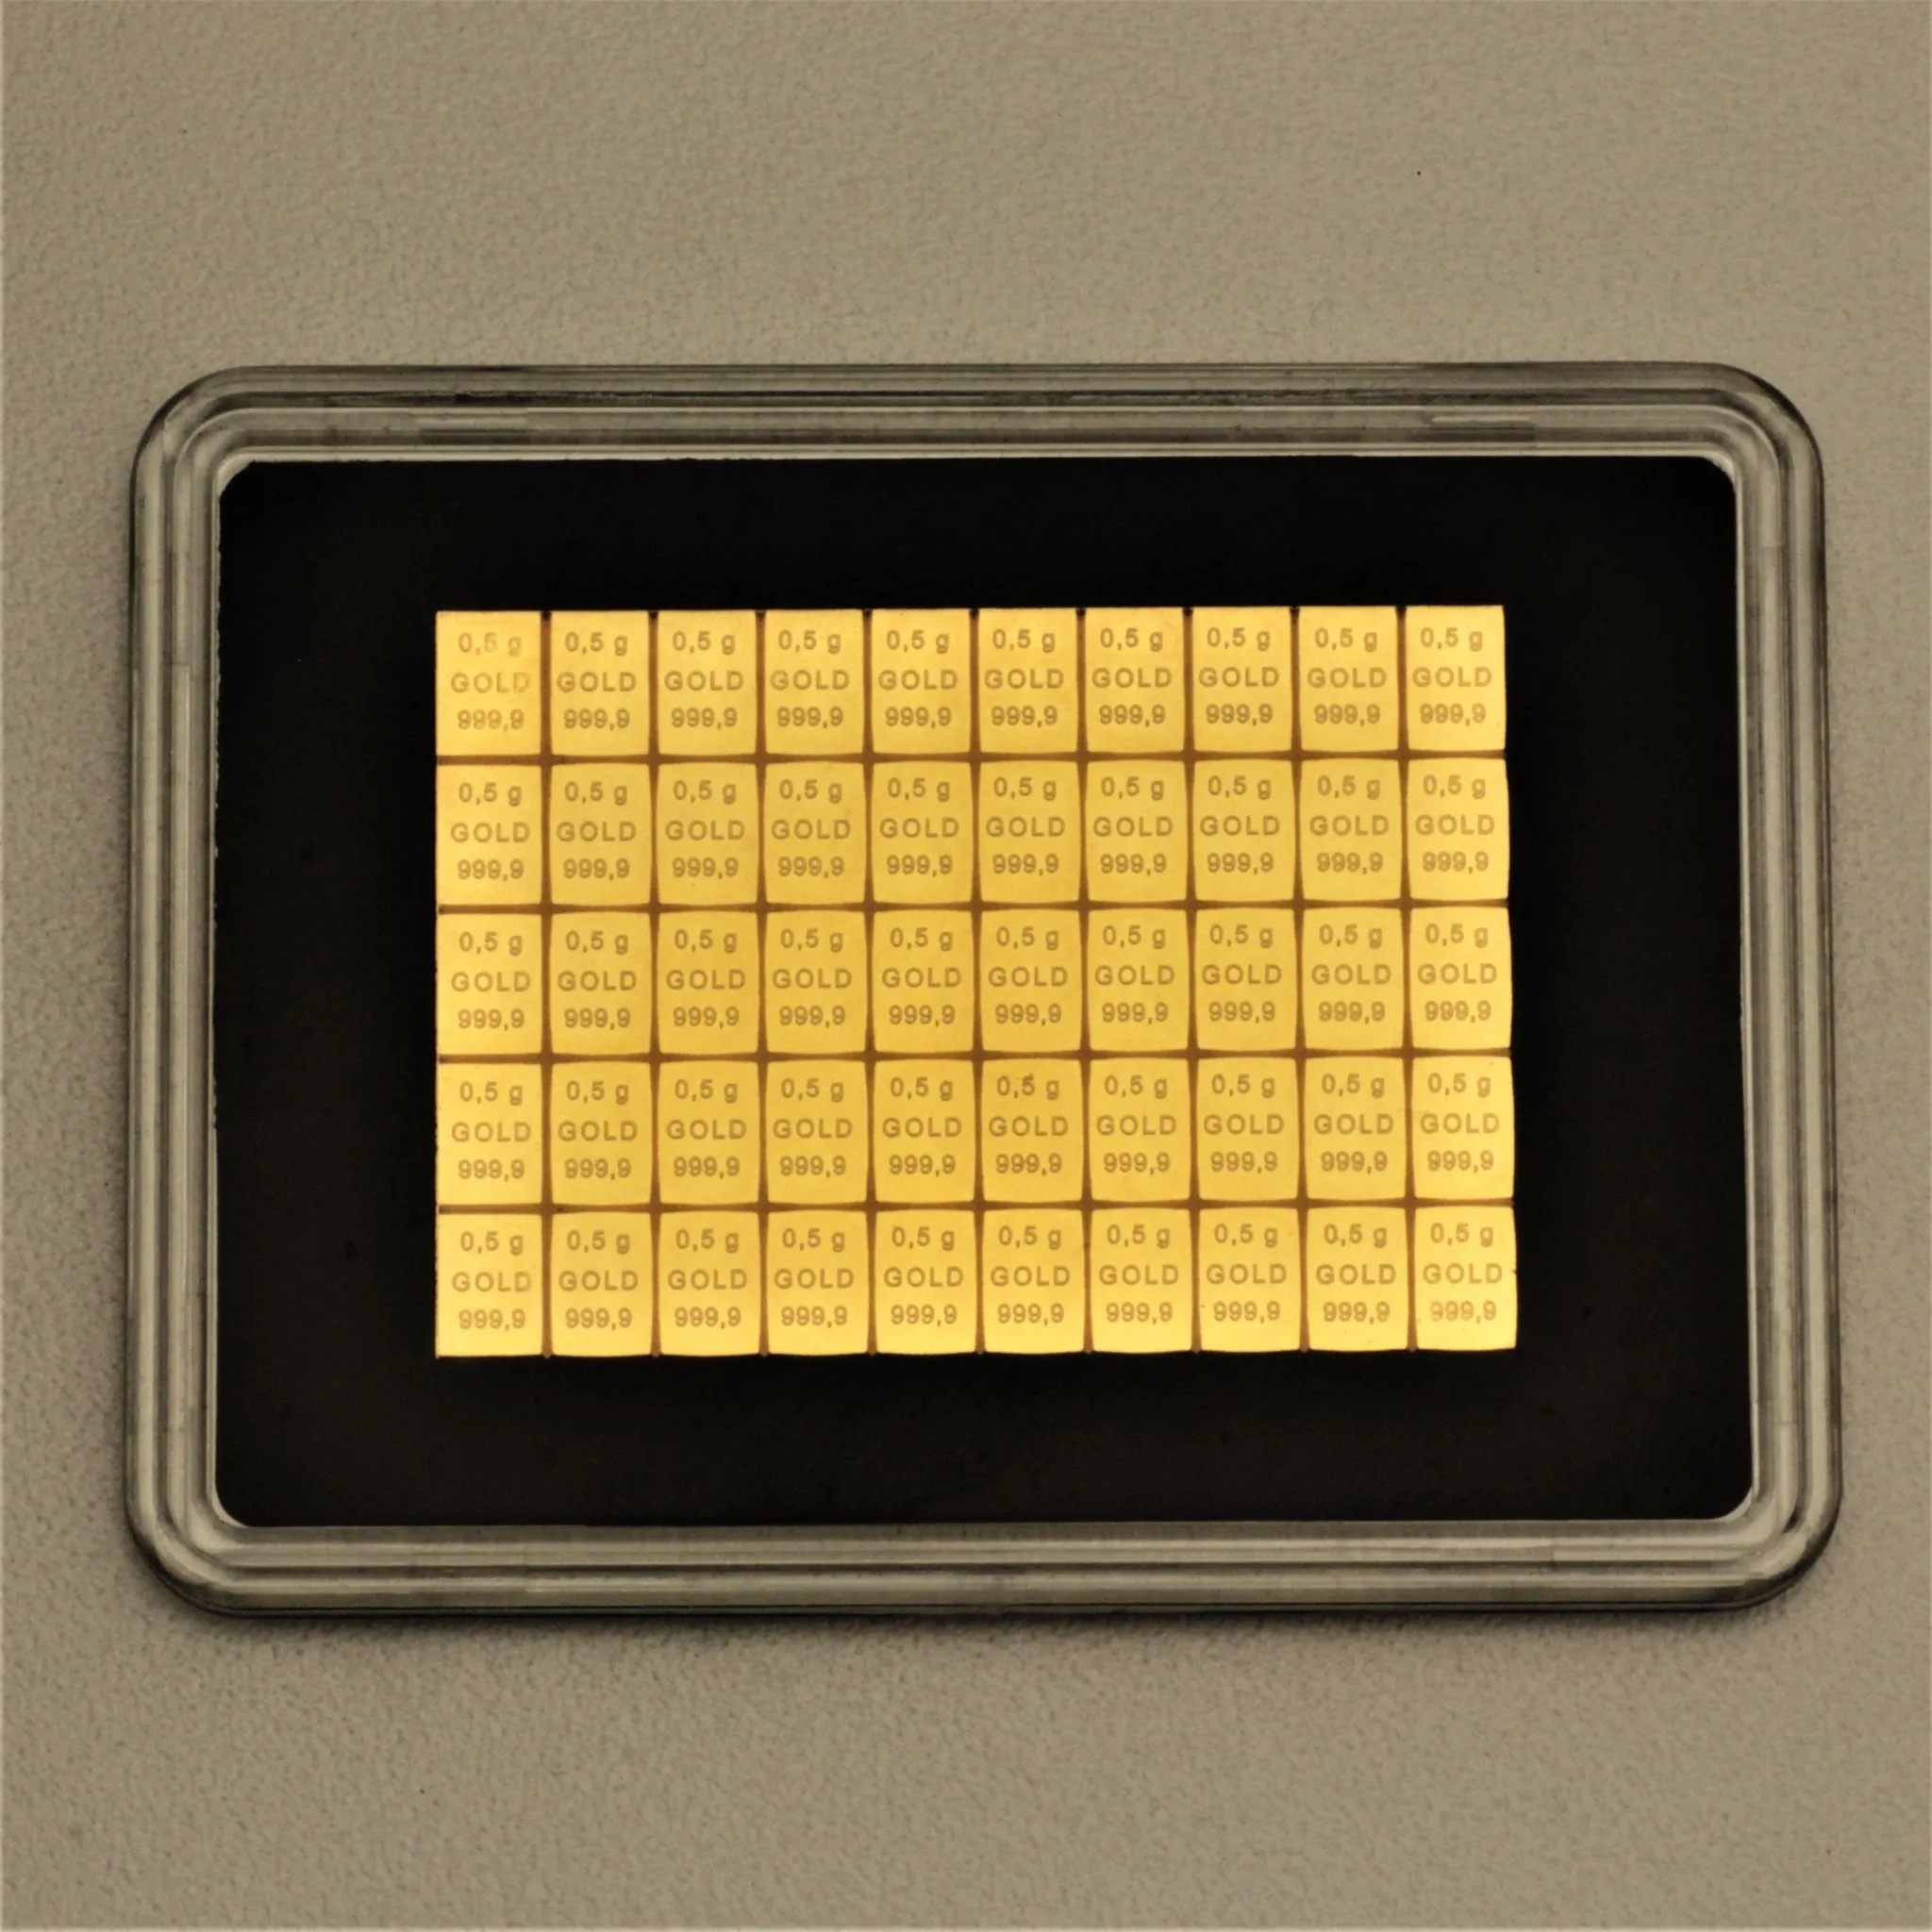 Tafelbarren 50 x 0,5 g Gold (999,9/1000)